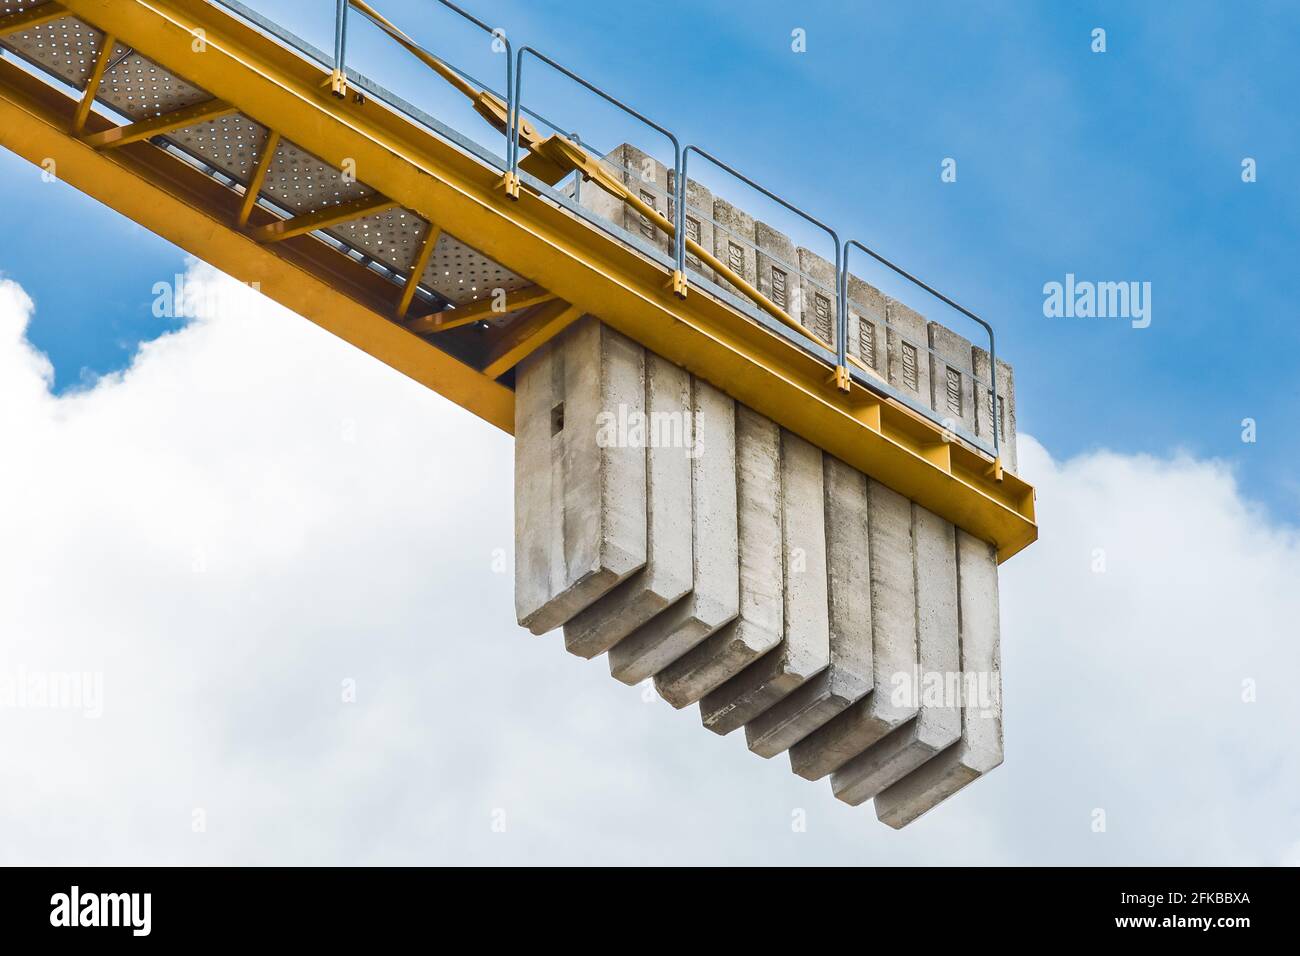 Bélarus, Minsk - 28 mai 2020 : contrepoids de blocs de béton sur la queue d'une grue industrielle de construction de tour contre un ciel bleu. Gros plan. Banque D'Images